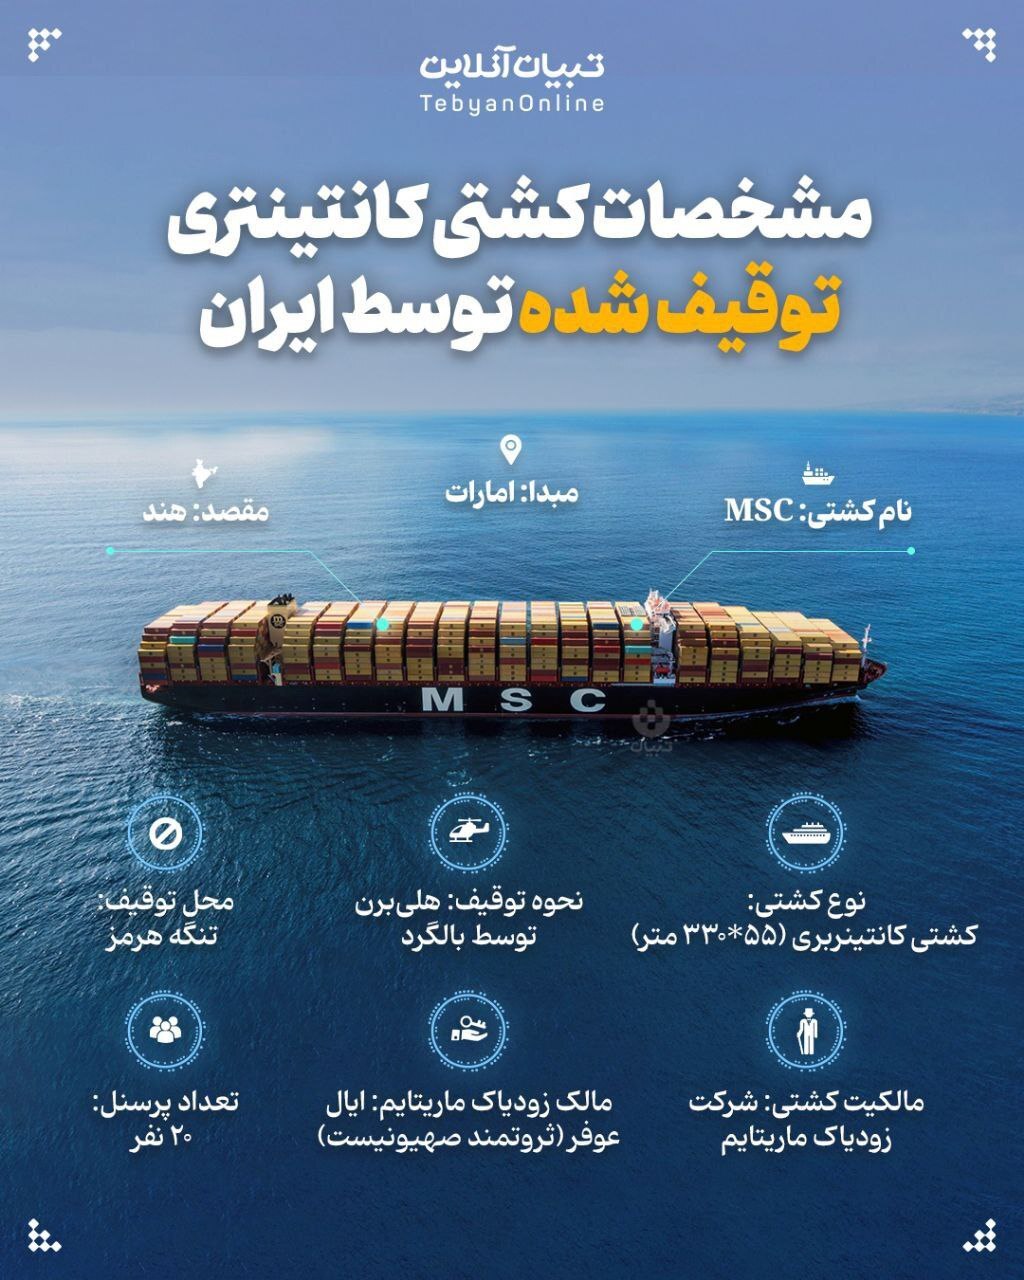 (عکس) مشخصات کشتی کانتینری توقیف شده توسط ایران